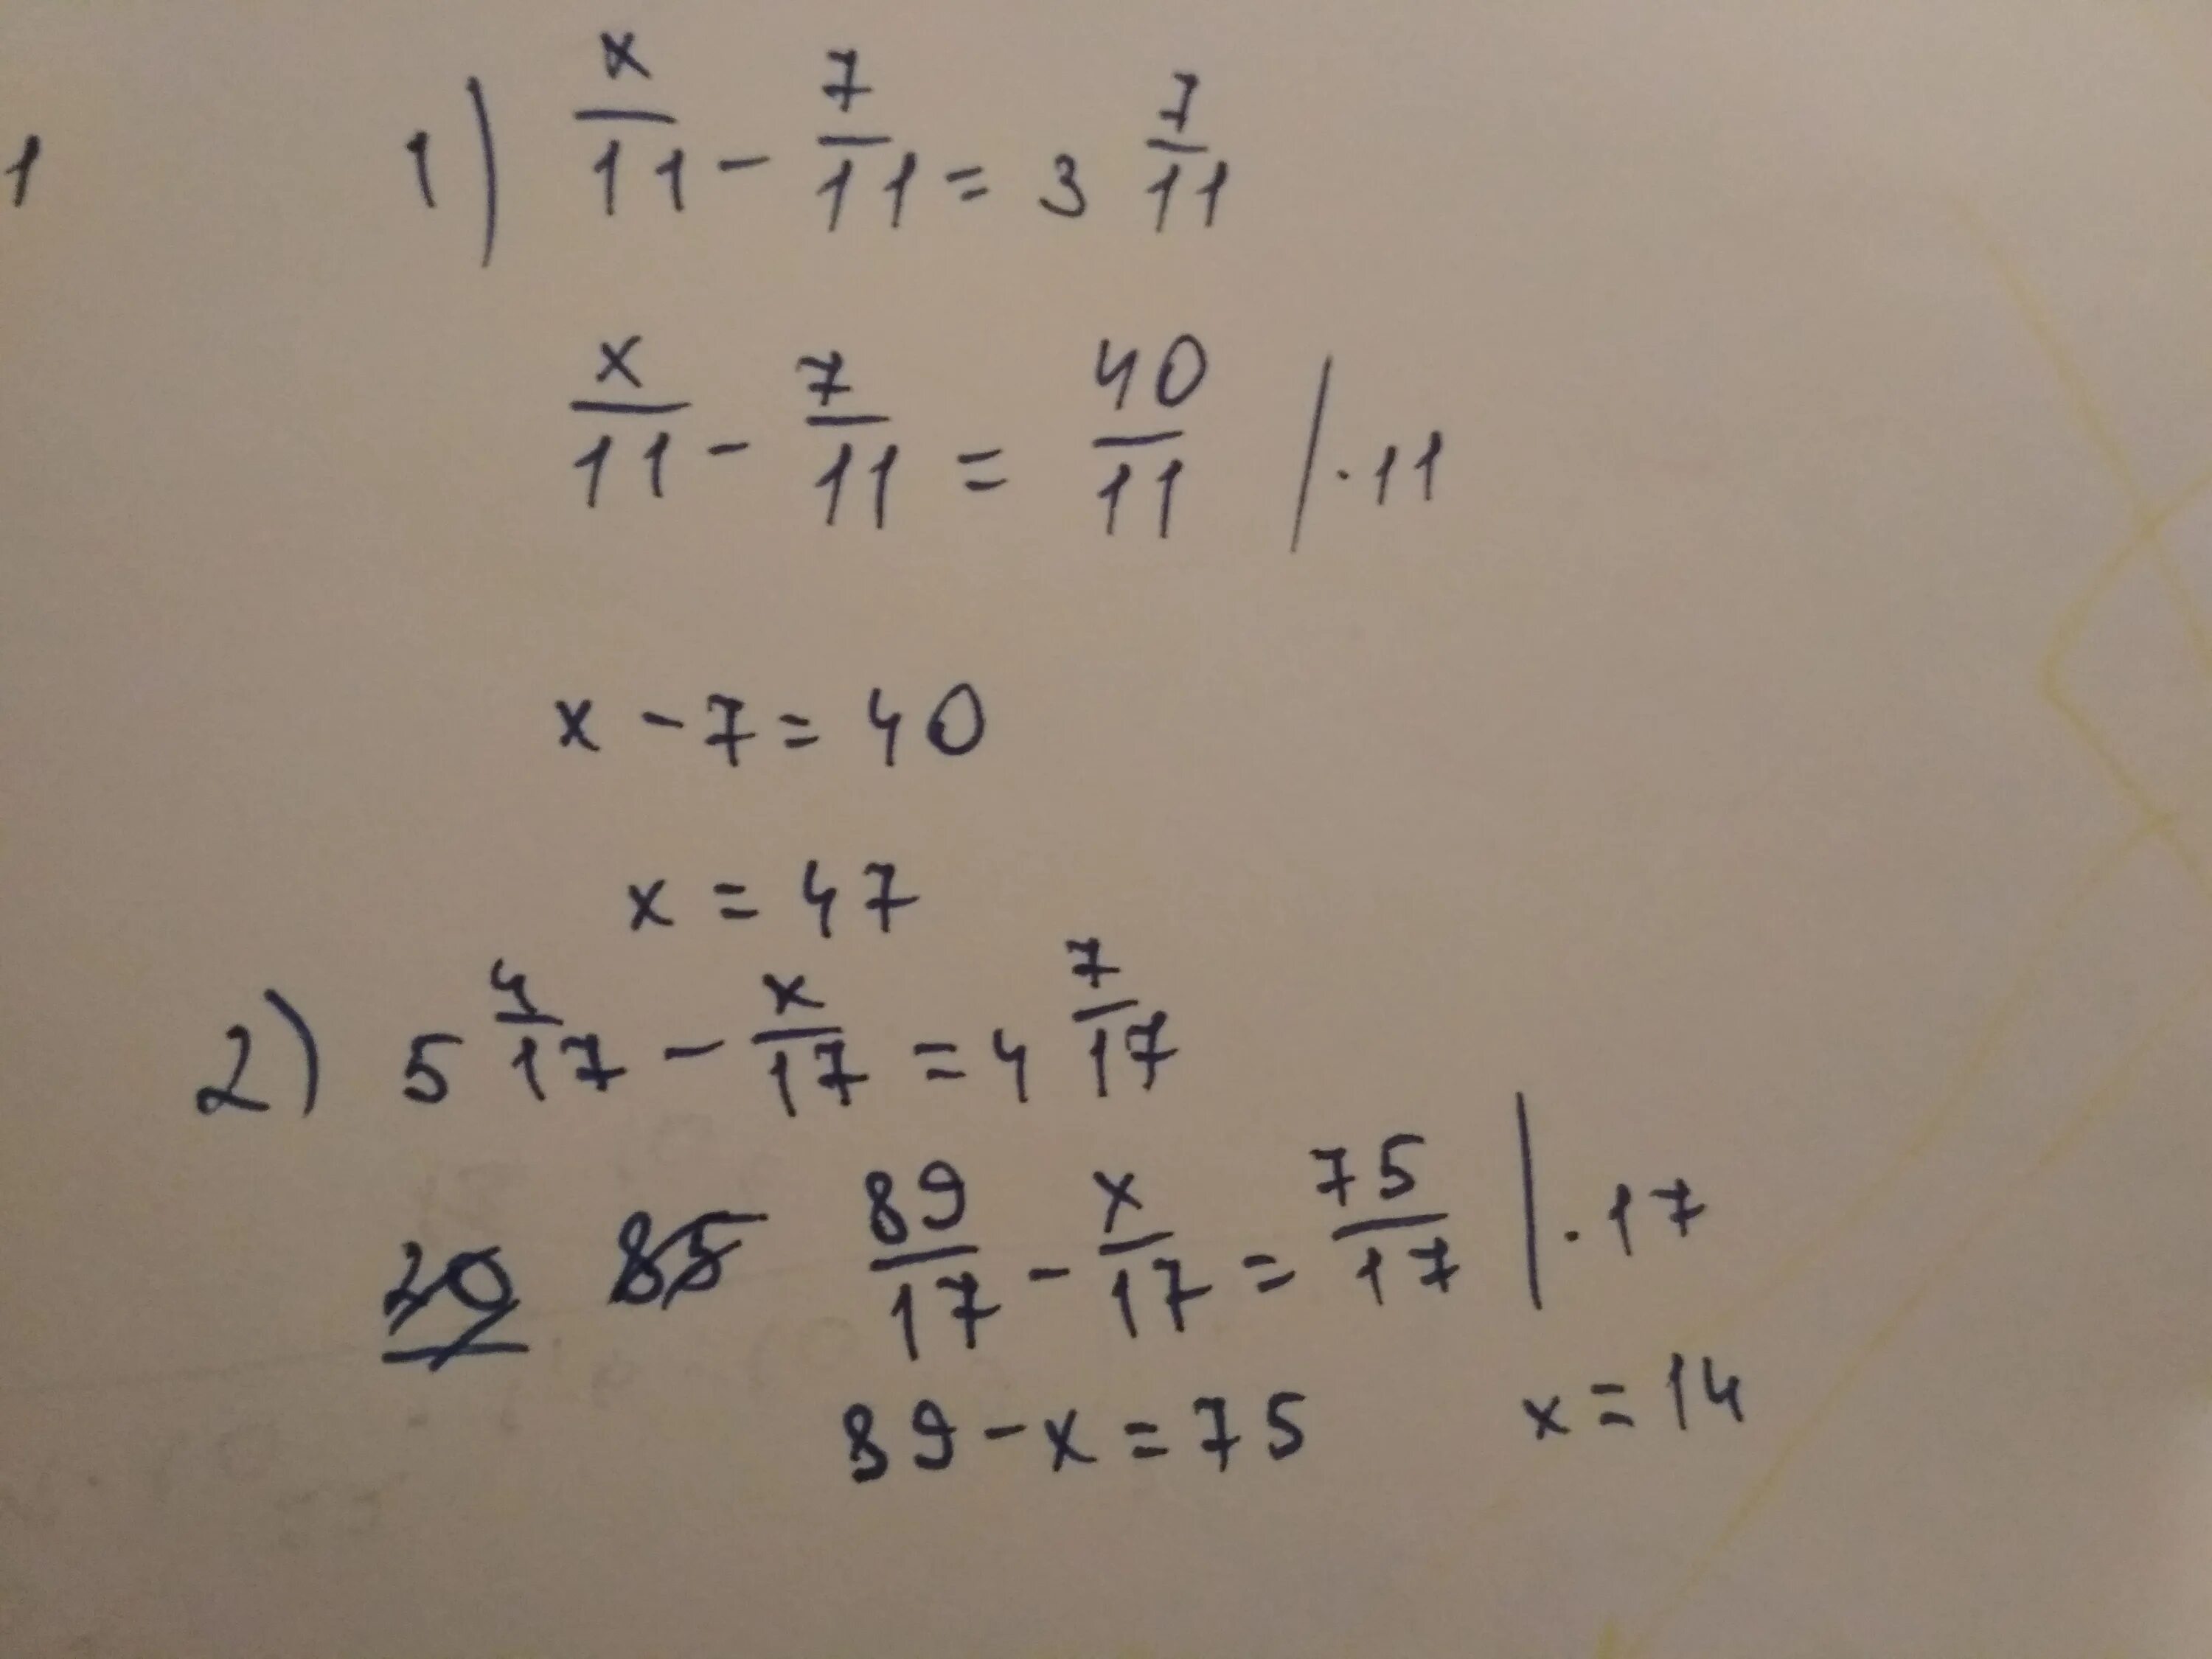 Уравнение 7 3x 8 x 2 7. 11/Х+4 -11/7. Х-У=7 Х+У=11. Реши уравнение 5:( 2 целых 1/2+x)= 5целых 3/4. -7/11х=1 3/11.